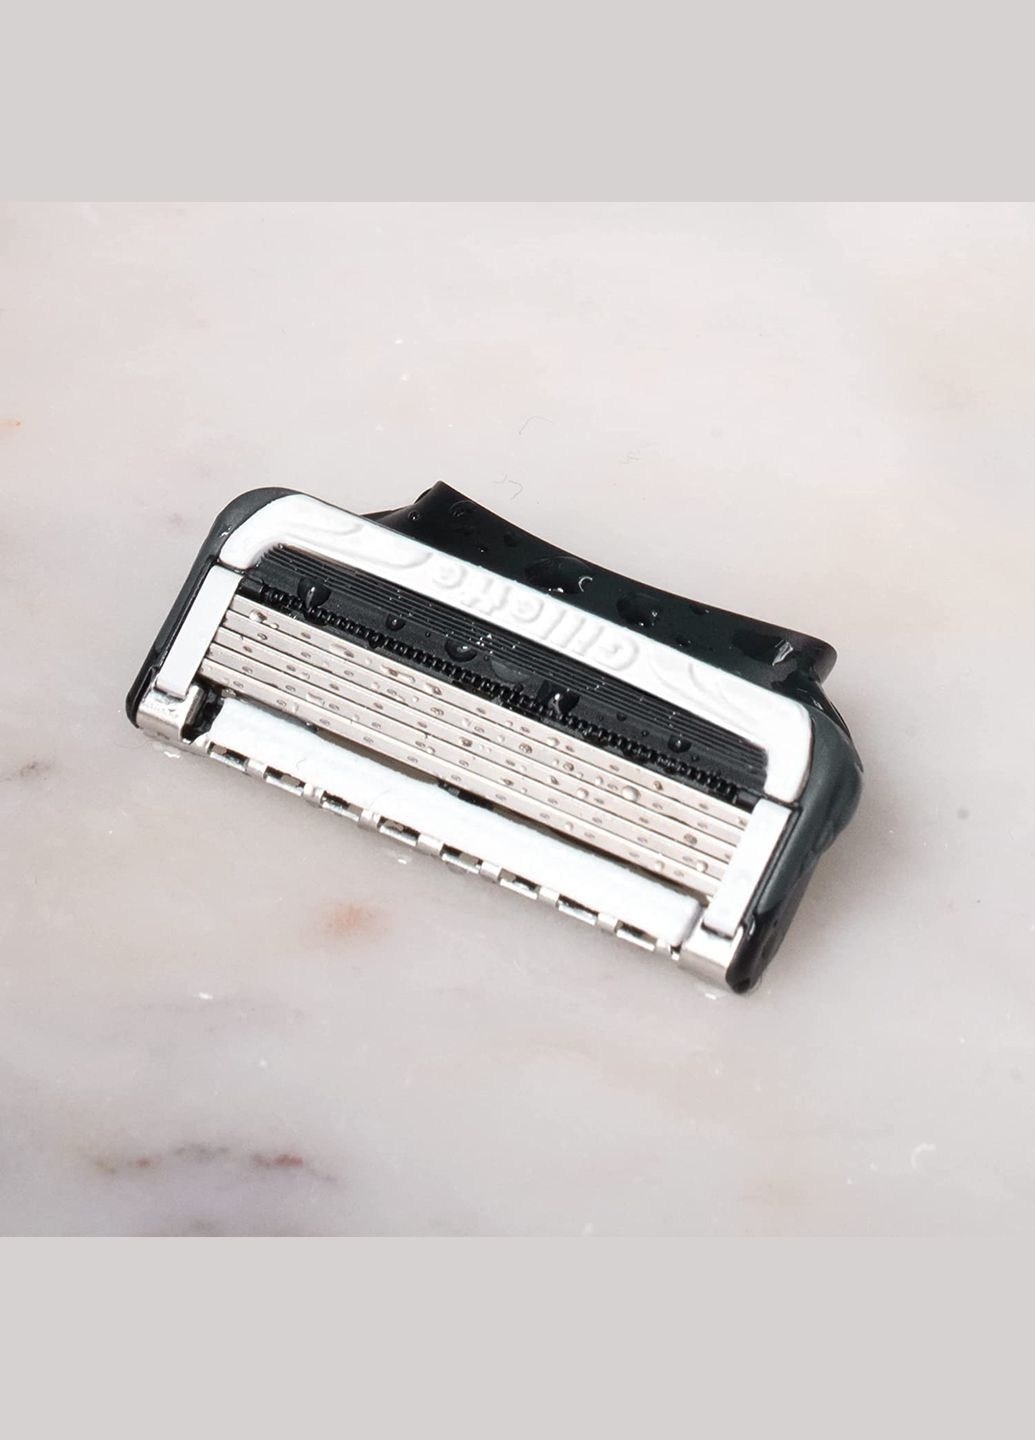 Мужская бритва для интимных зон Intimate станок 6 лезвий подставка Gillette (296202527)